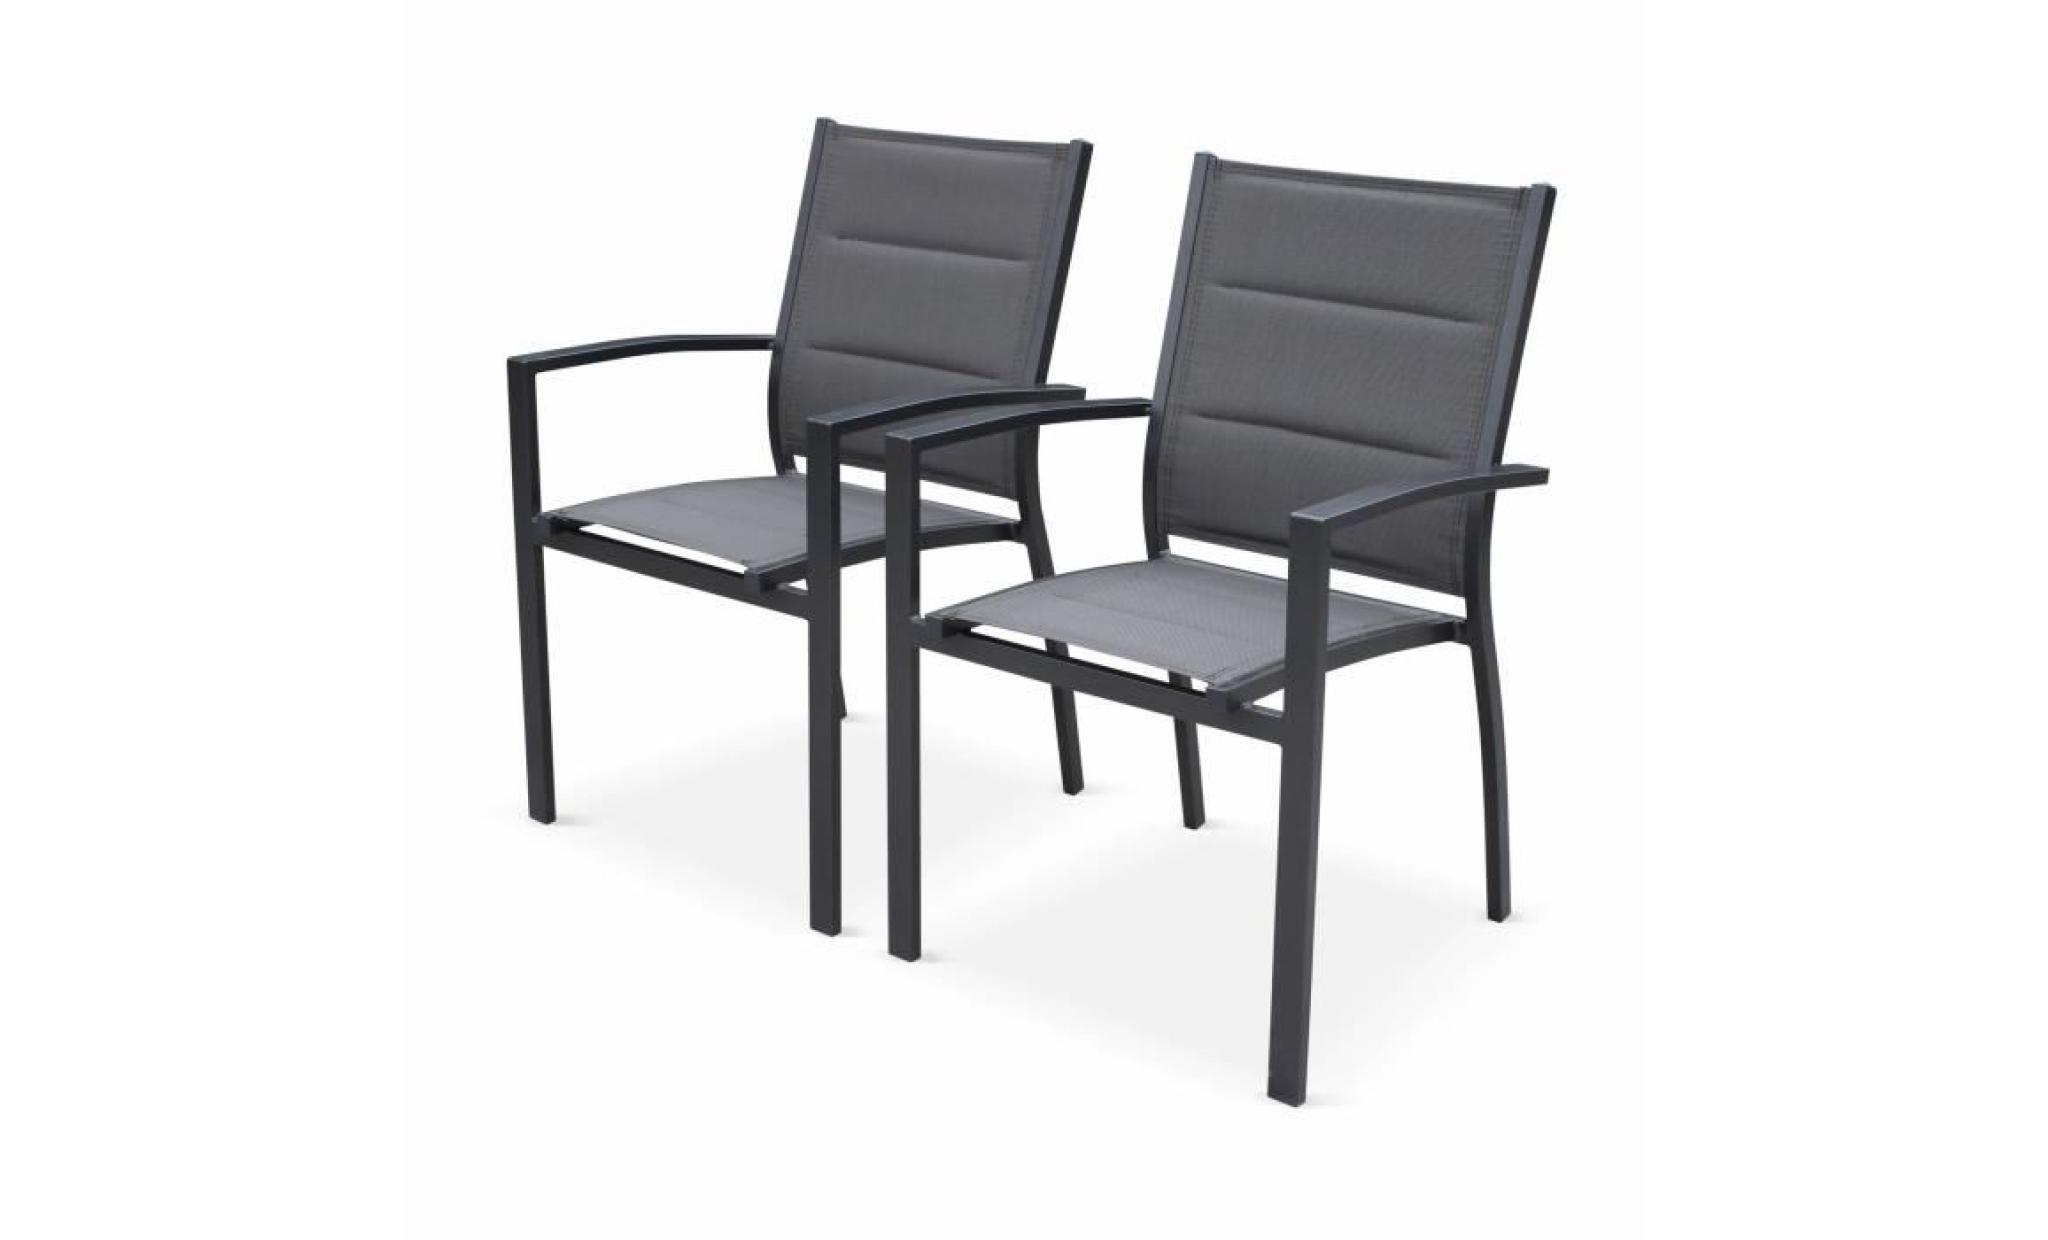 lot de 2 fauteuils   chicago / odenton / philadelphie anthracite   en aluminium anthracite et textilène gris foncé, empilables